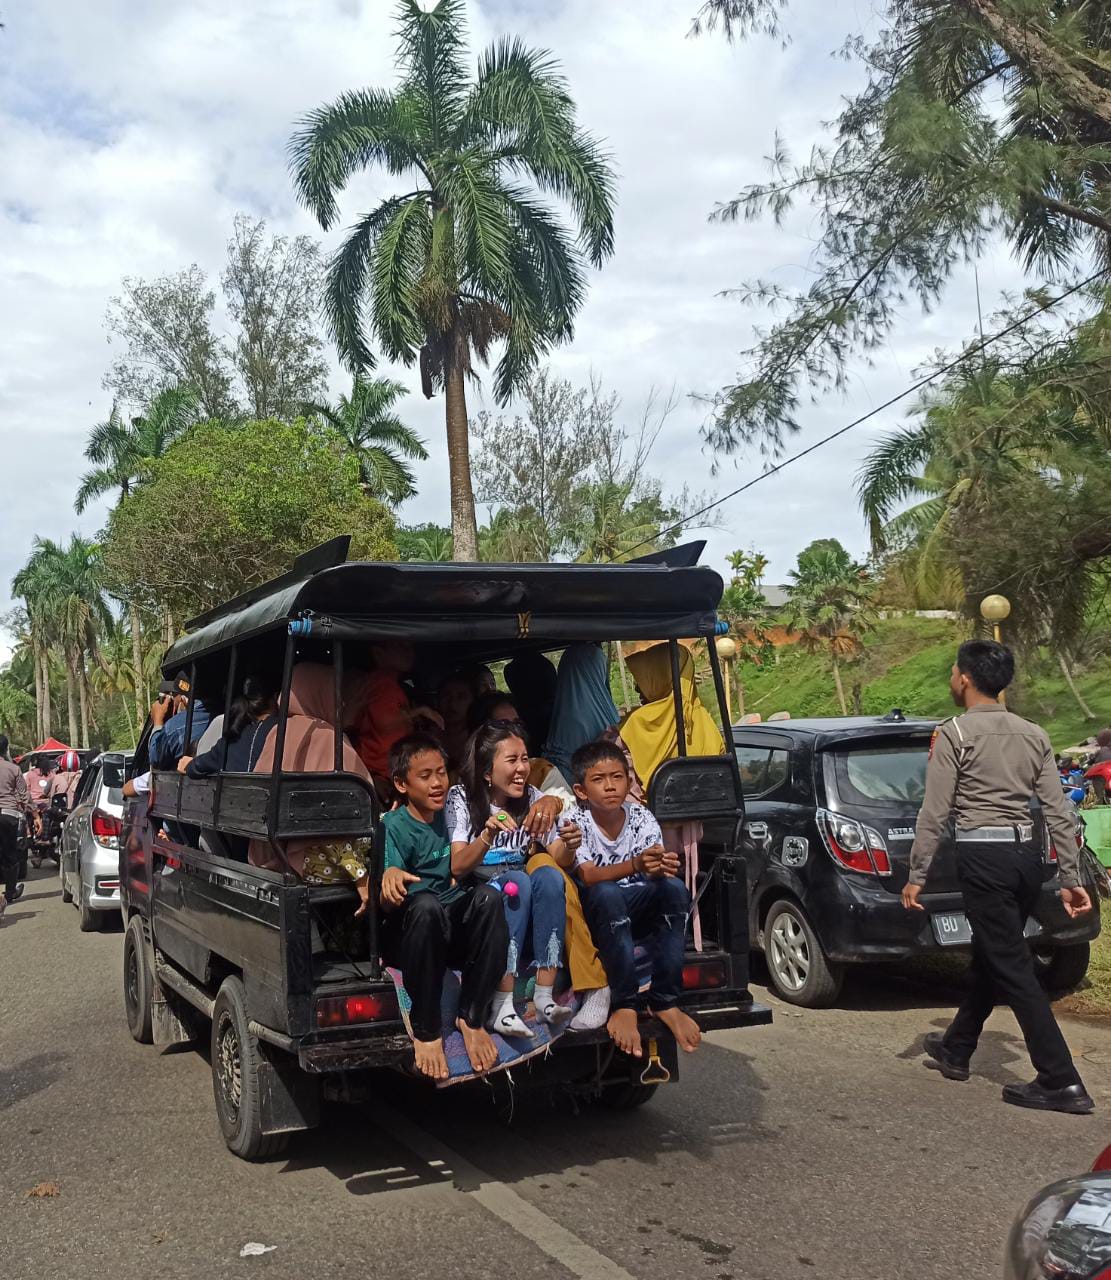 Mobil Kompong Masih Angkut Penumpang di Pasar Bawah